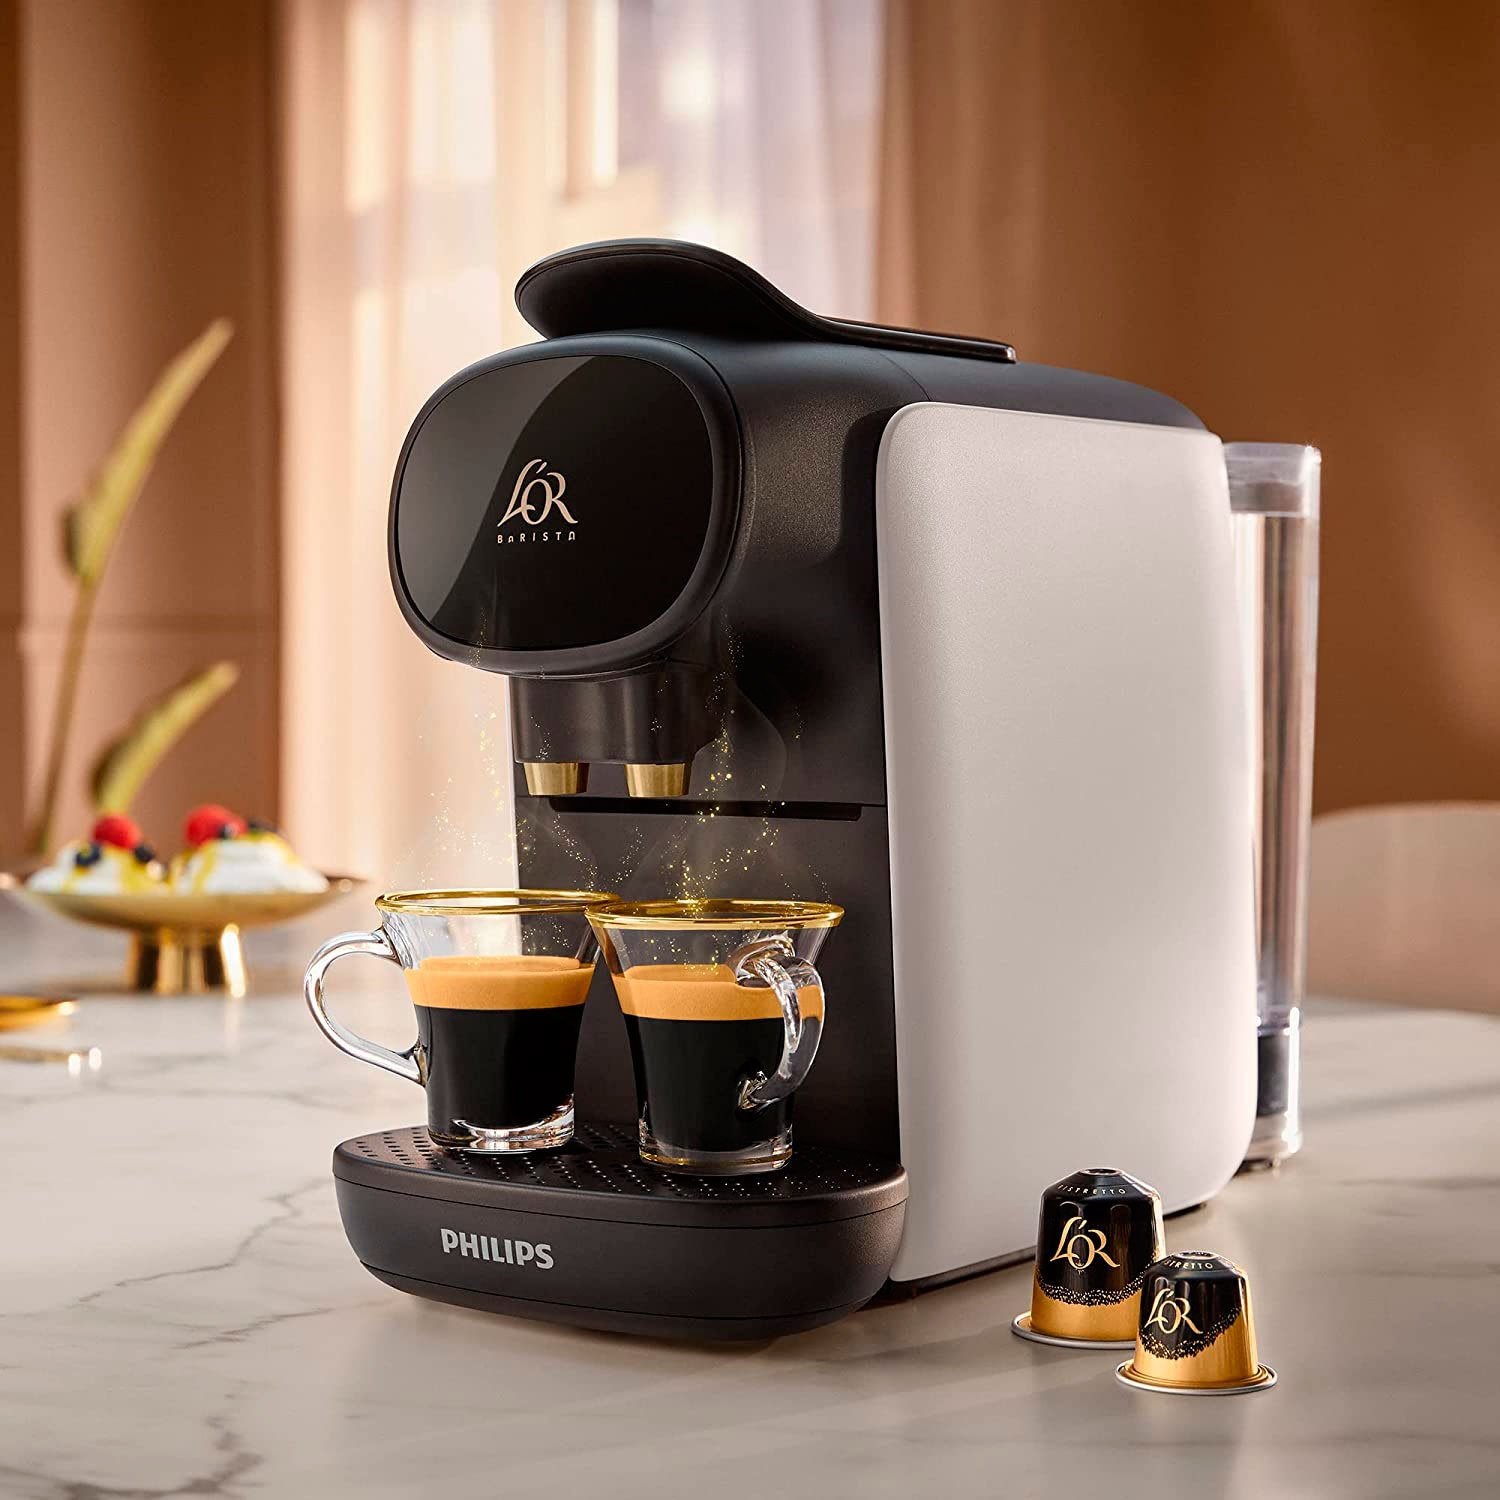 La cafetera que hace el café espresso perfecto está rebajada un 52%